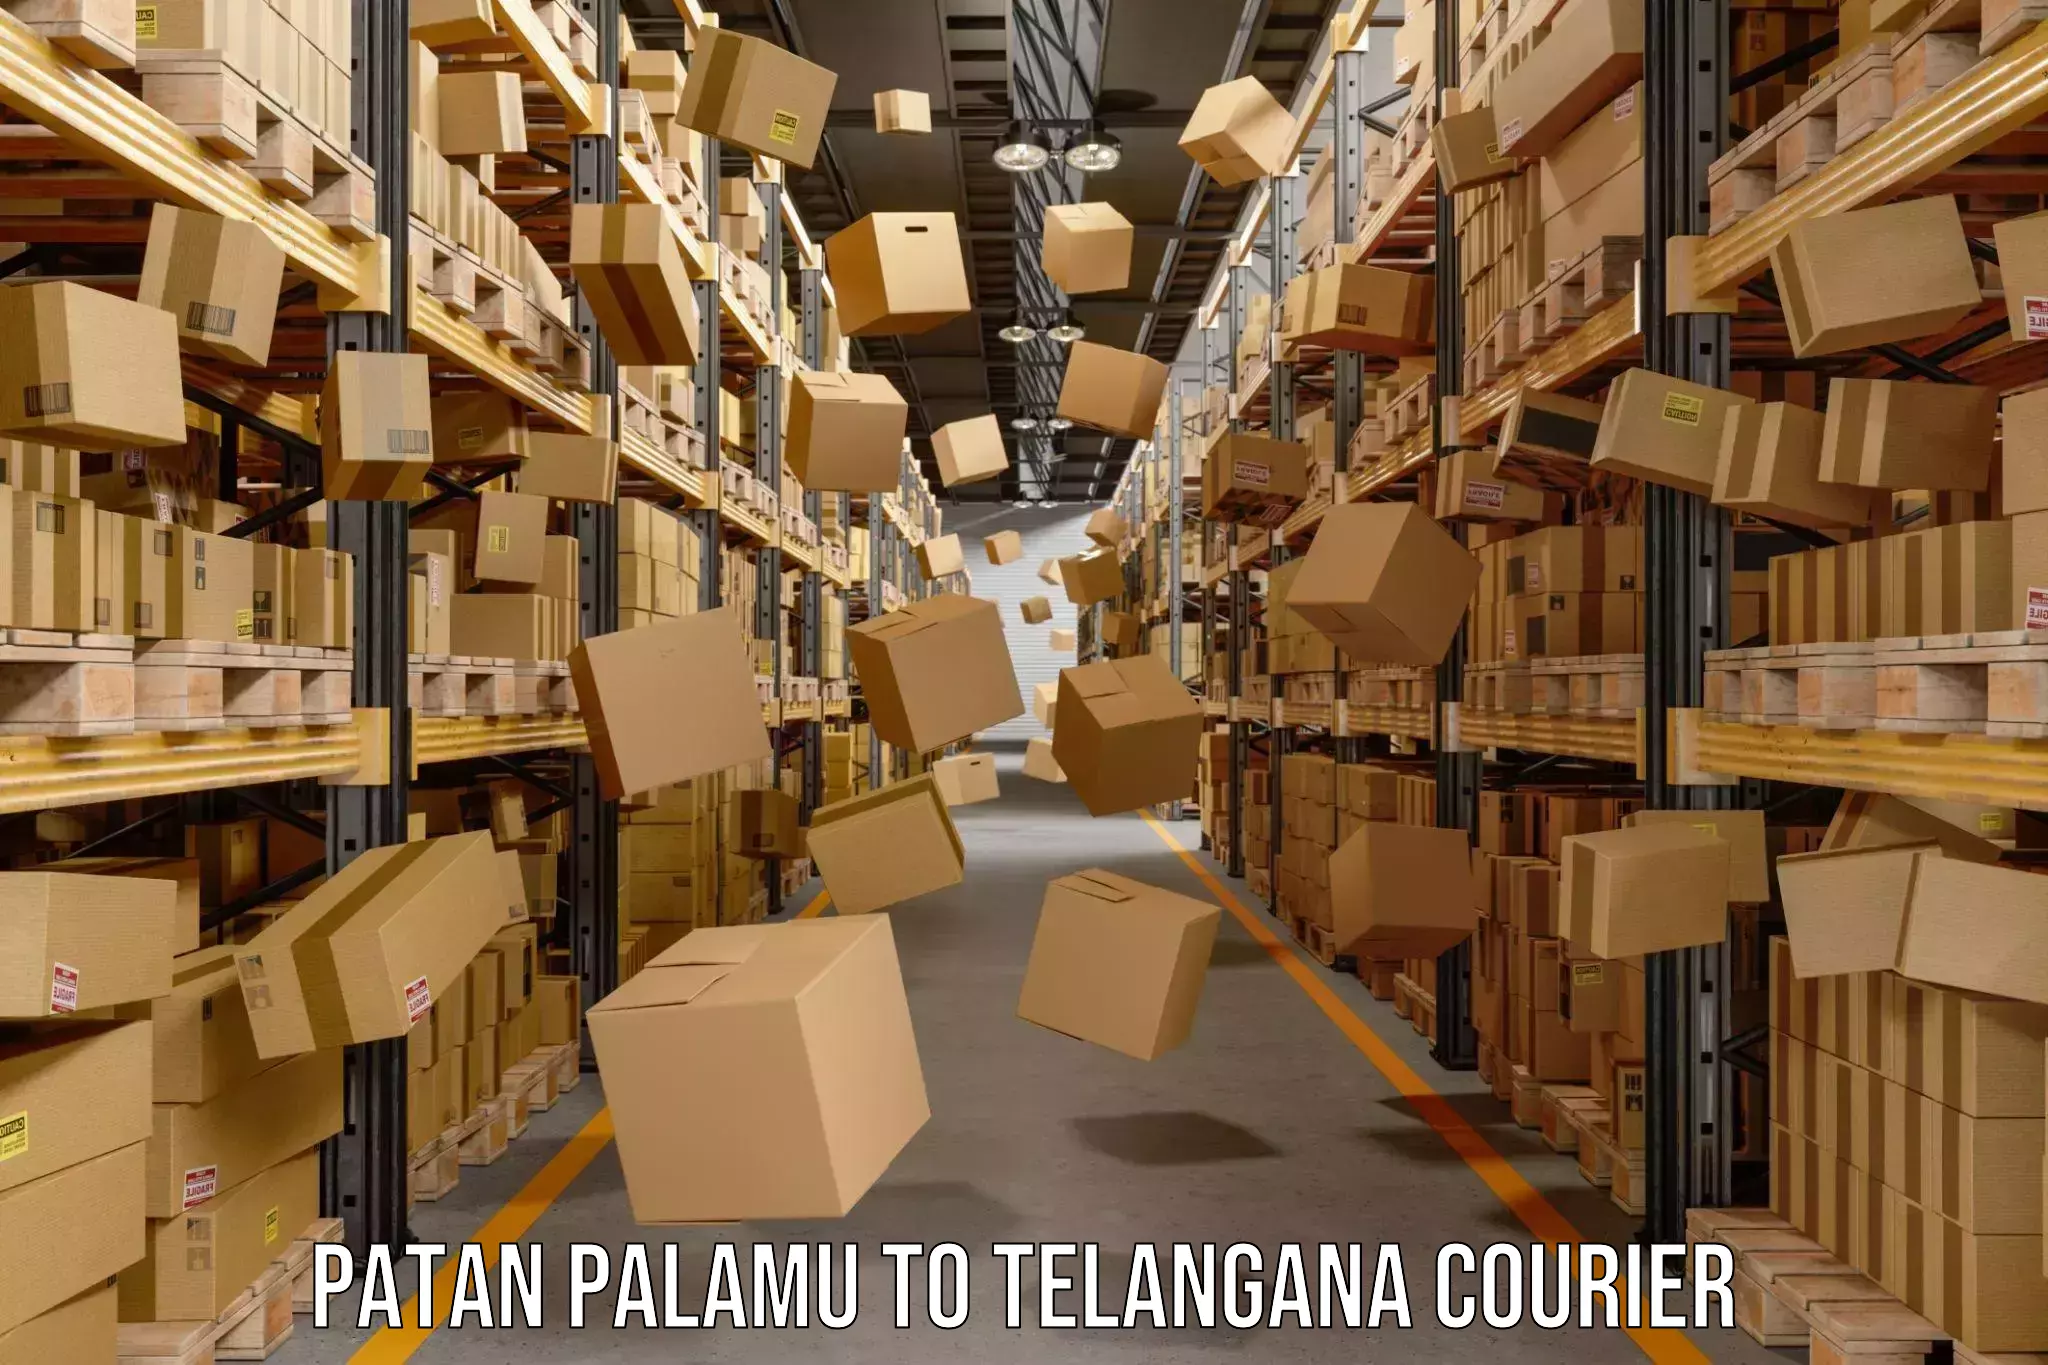 Efficient parcel service Patan Palamu to Khairatabad